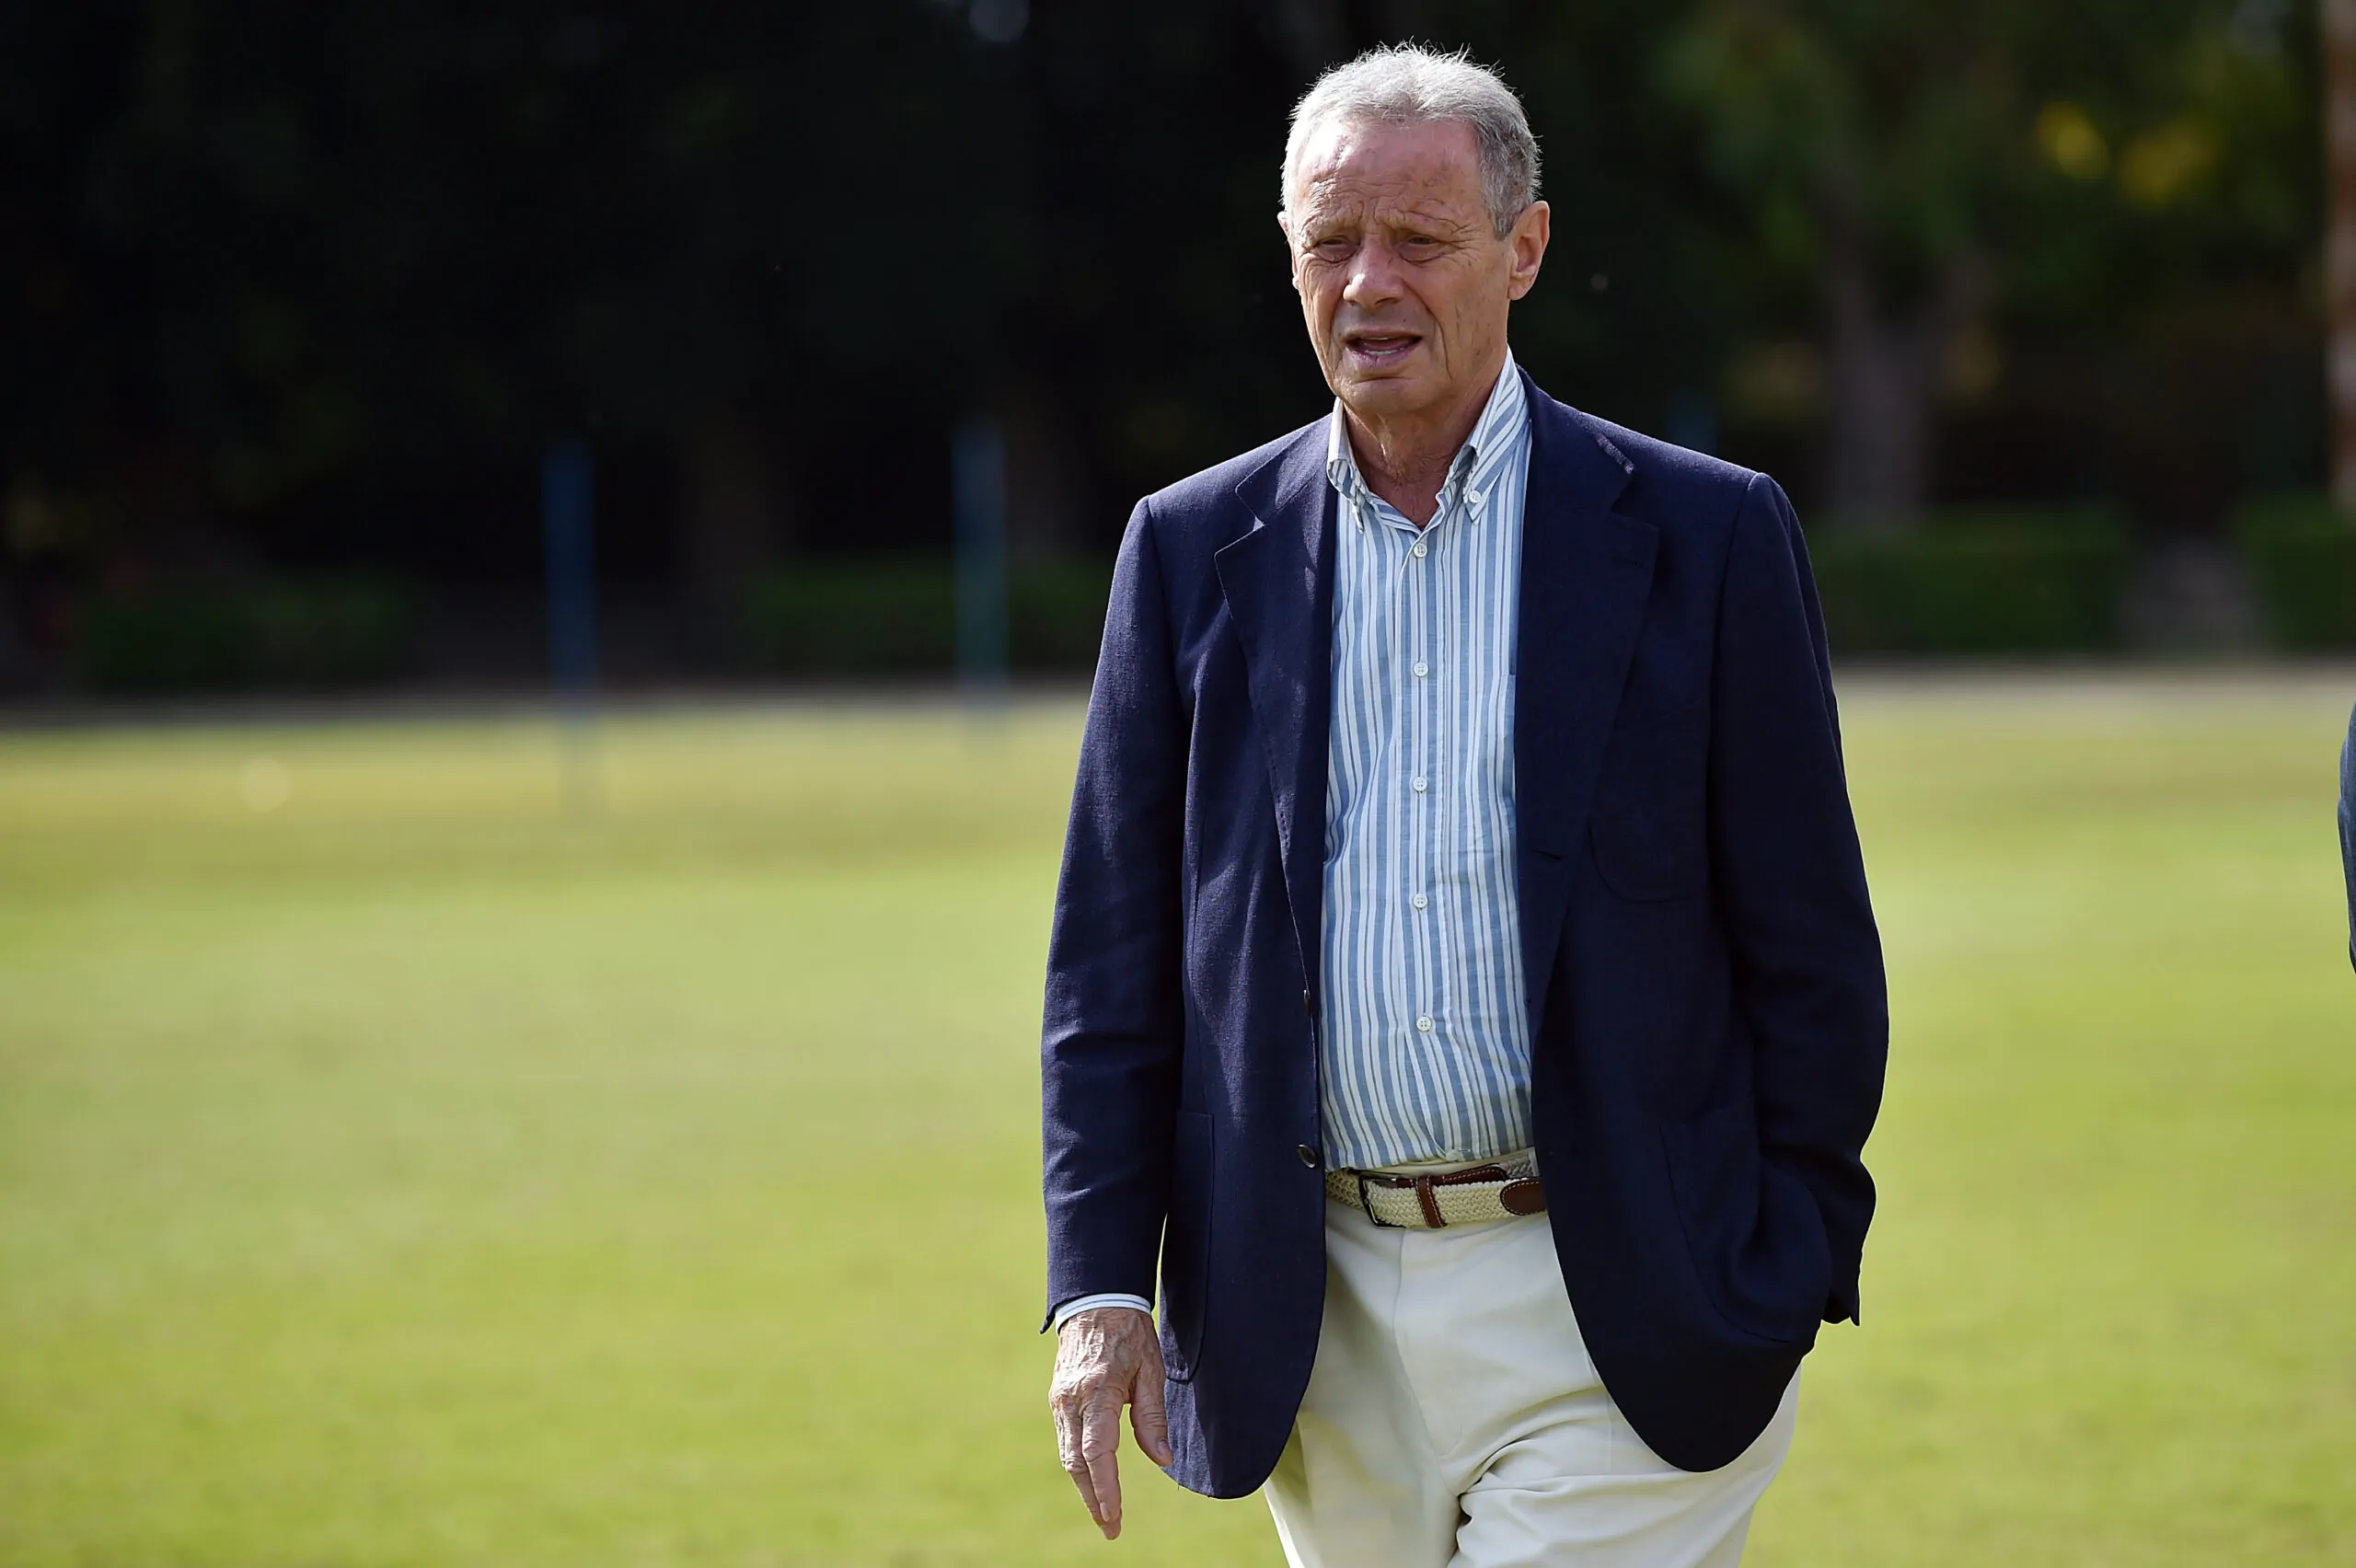 Lutto nel mondo del calcio: è morto l’ex presidente del Palermo Zamparini